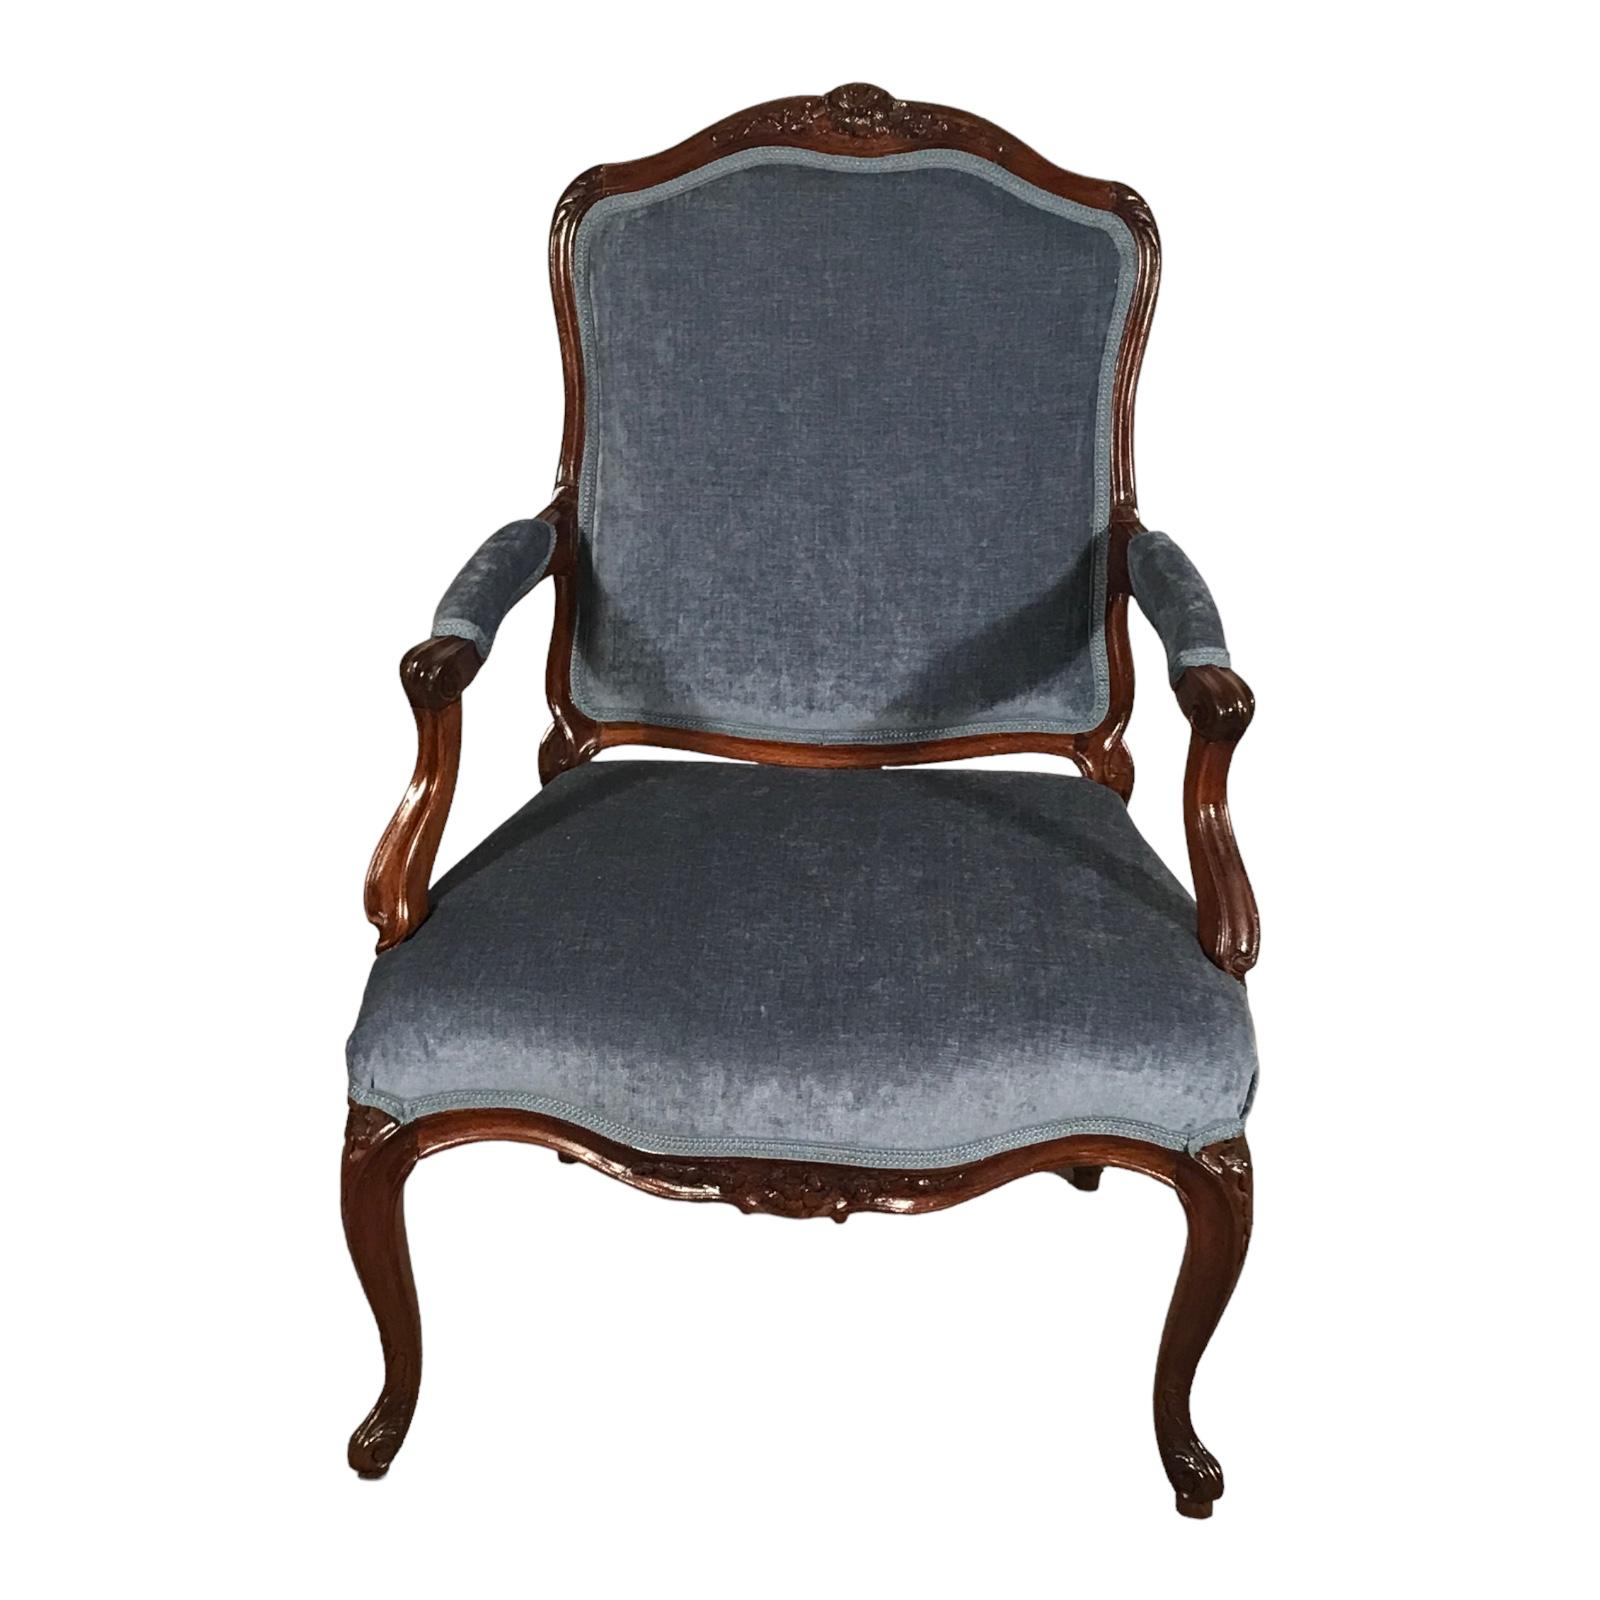 Découvrez un remarquable morceau d'histoire avec ce fauteuil baroque du XVIIIe siècle, méticuleusement conservé et datant de 1750. 
Originaire d'Allemagne, cette pièce exquise incarne l'opulence et l'art de l'ère baroque.  
Fabriqué à la main à